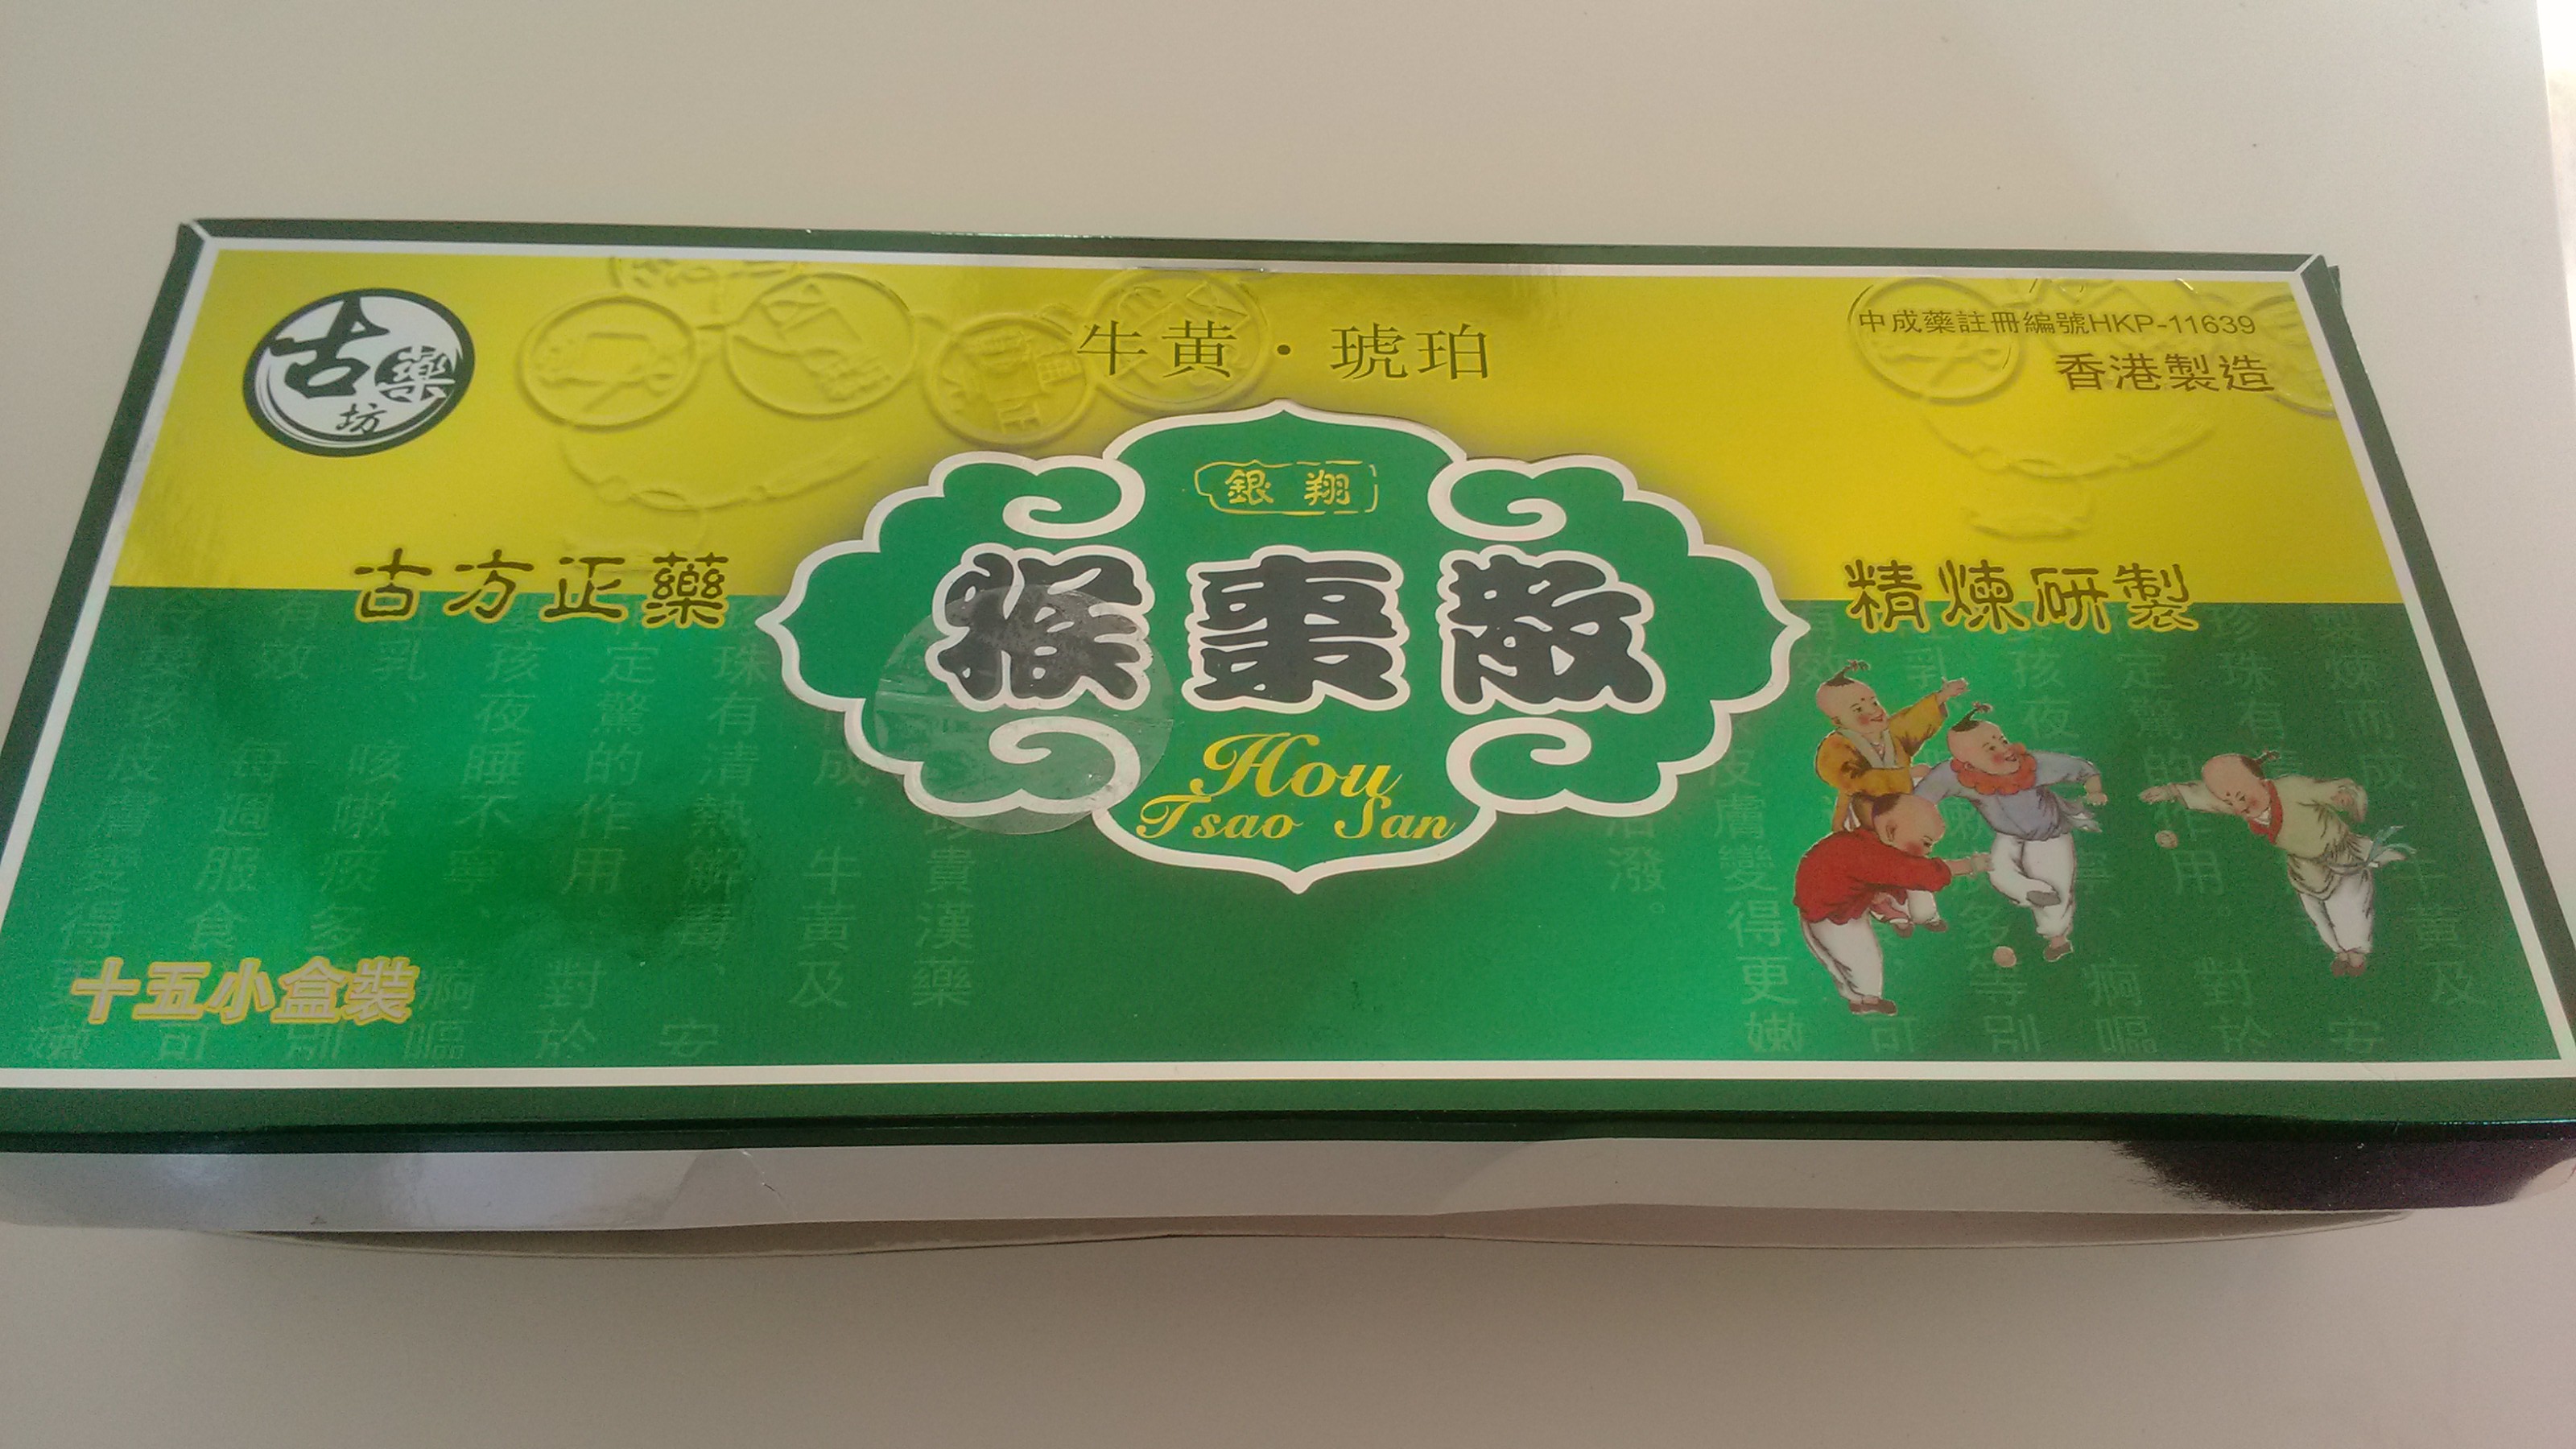 转让在香港购买的保婴丹,猴枣散,有效期全部是到15年7月